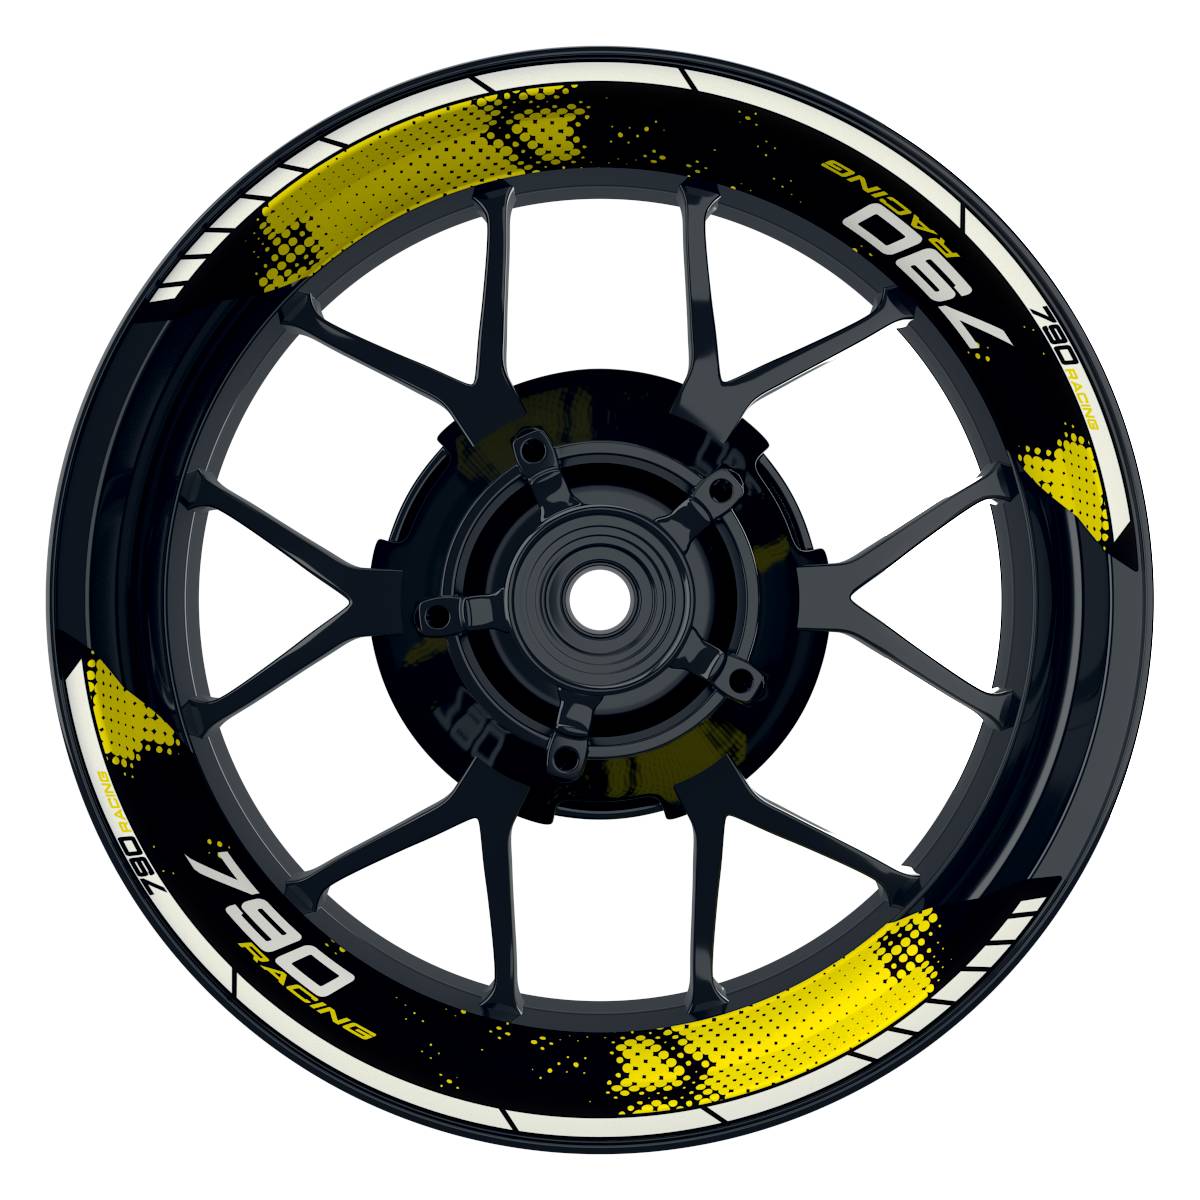 KTM Racing 790 Dots schwarz gelb Frontansicht